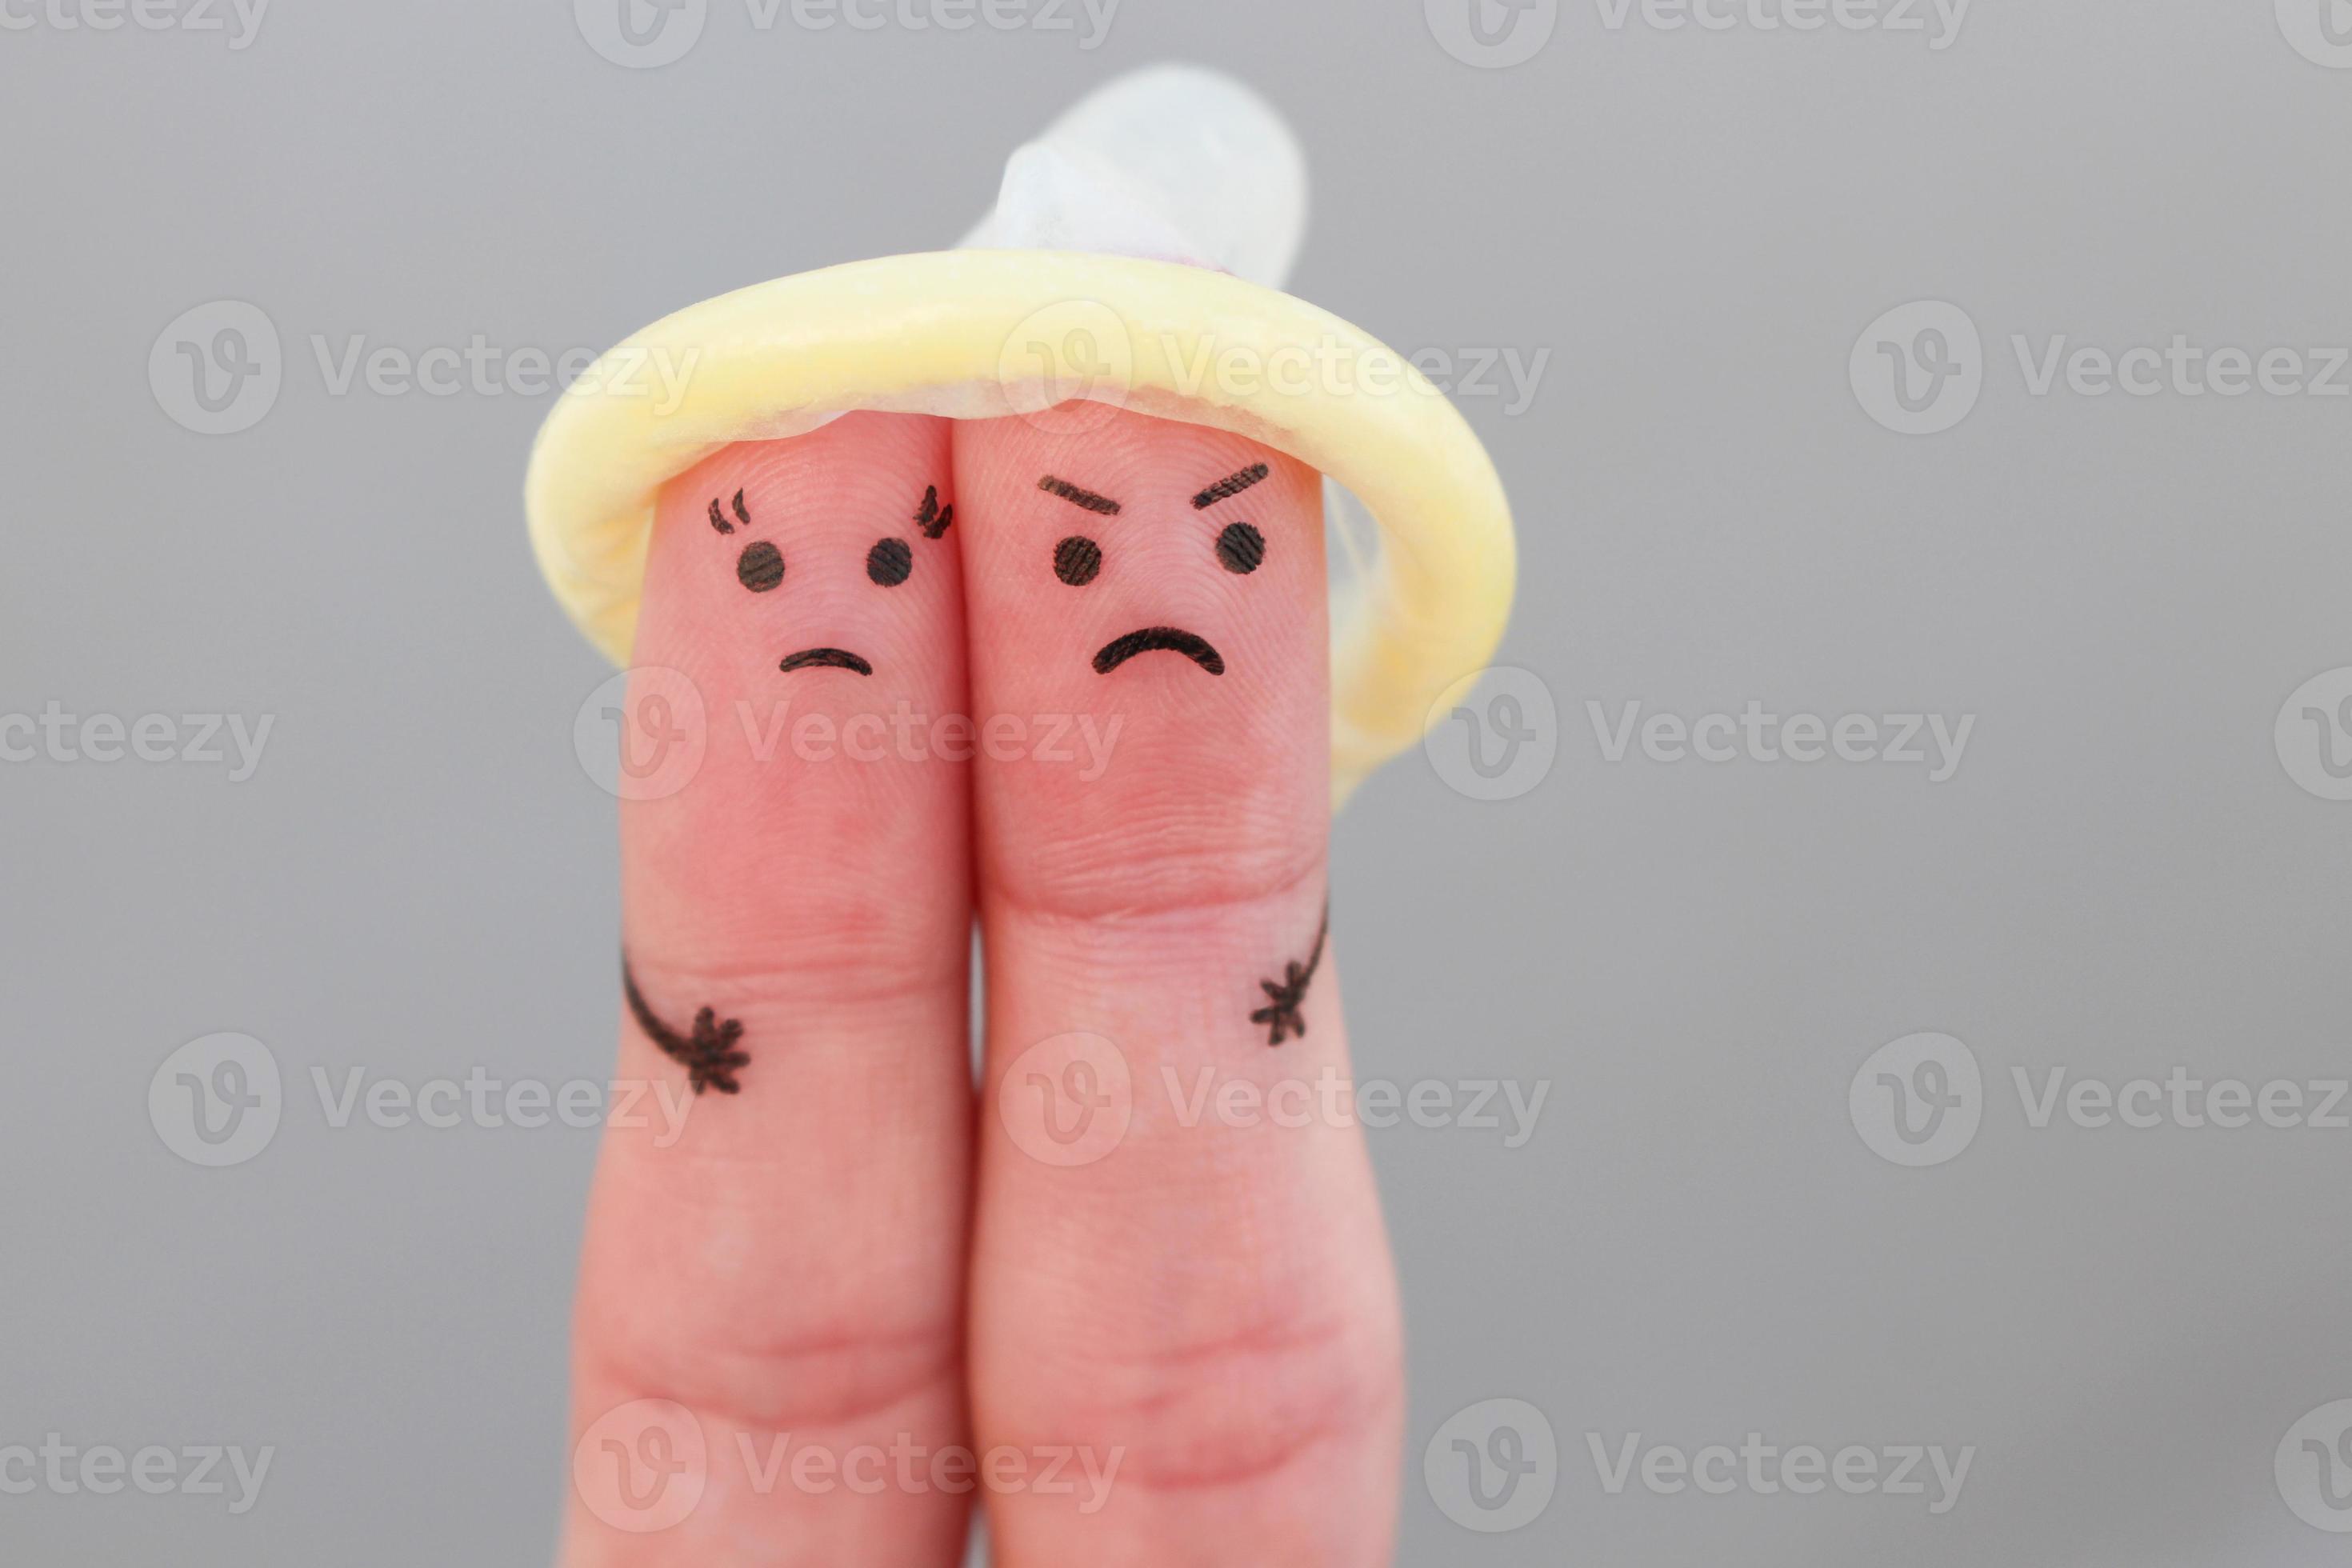 vingers kunst van paar. concept van Mens en vrouw weigeren naar gebruik condoom foto